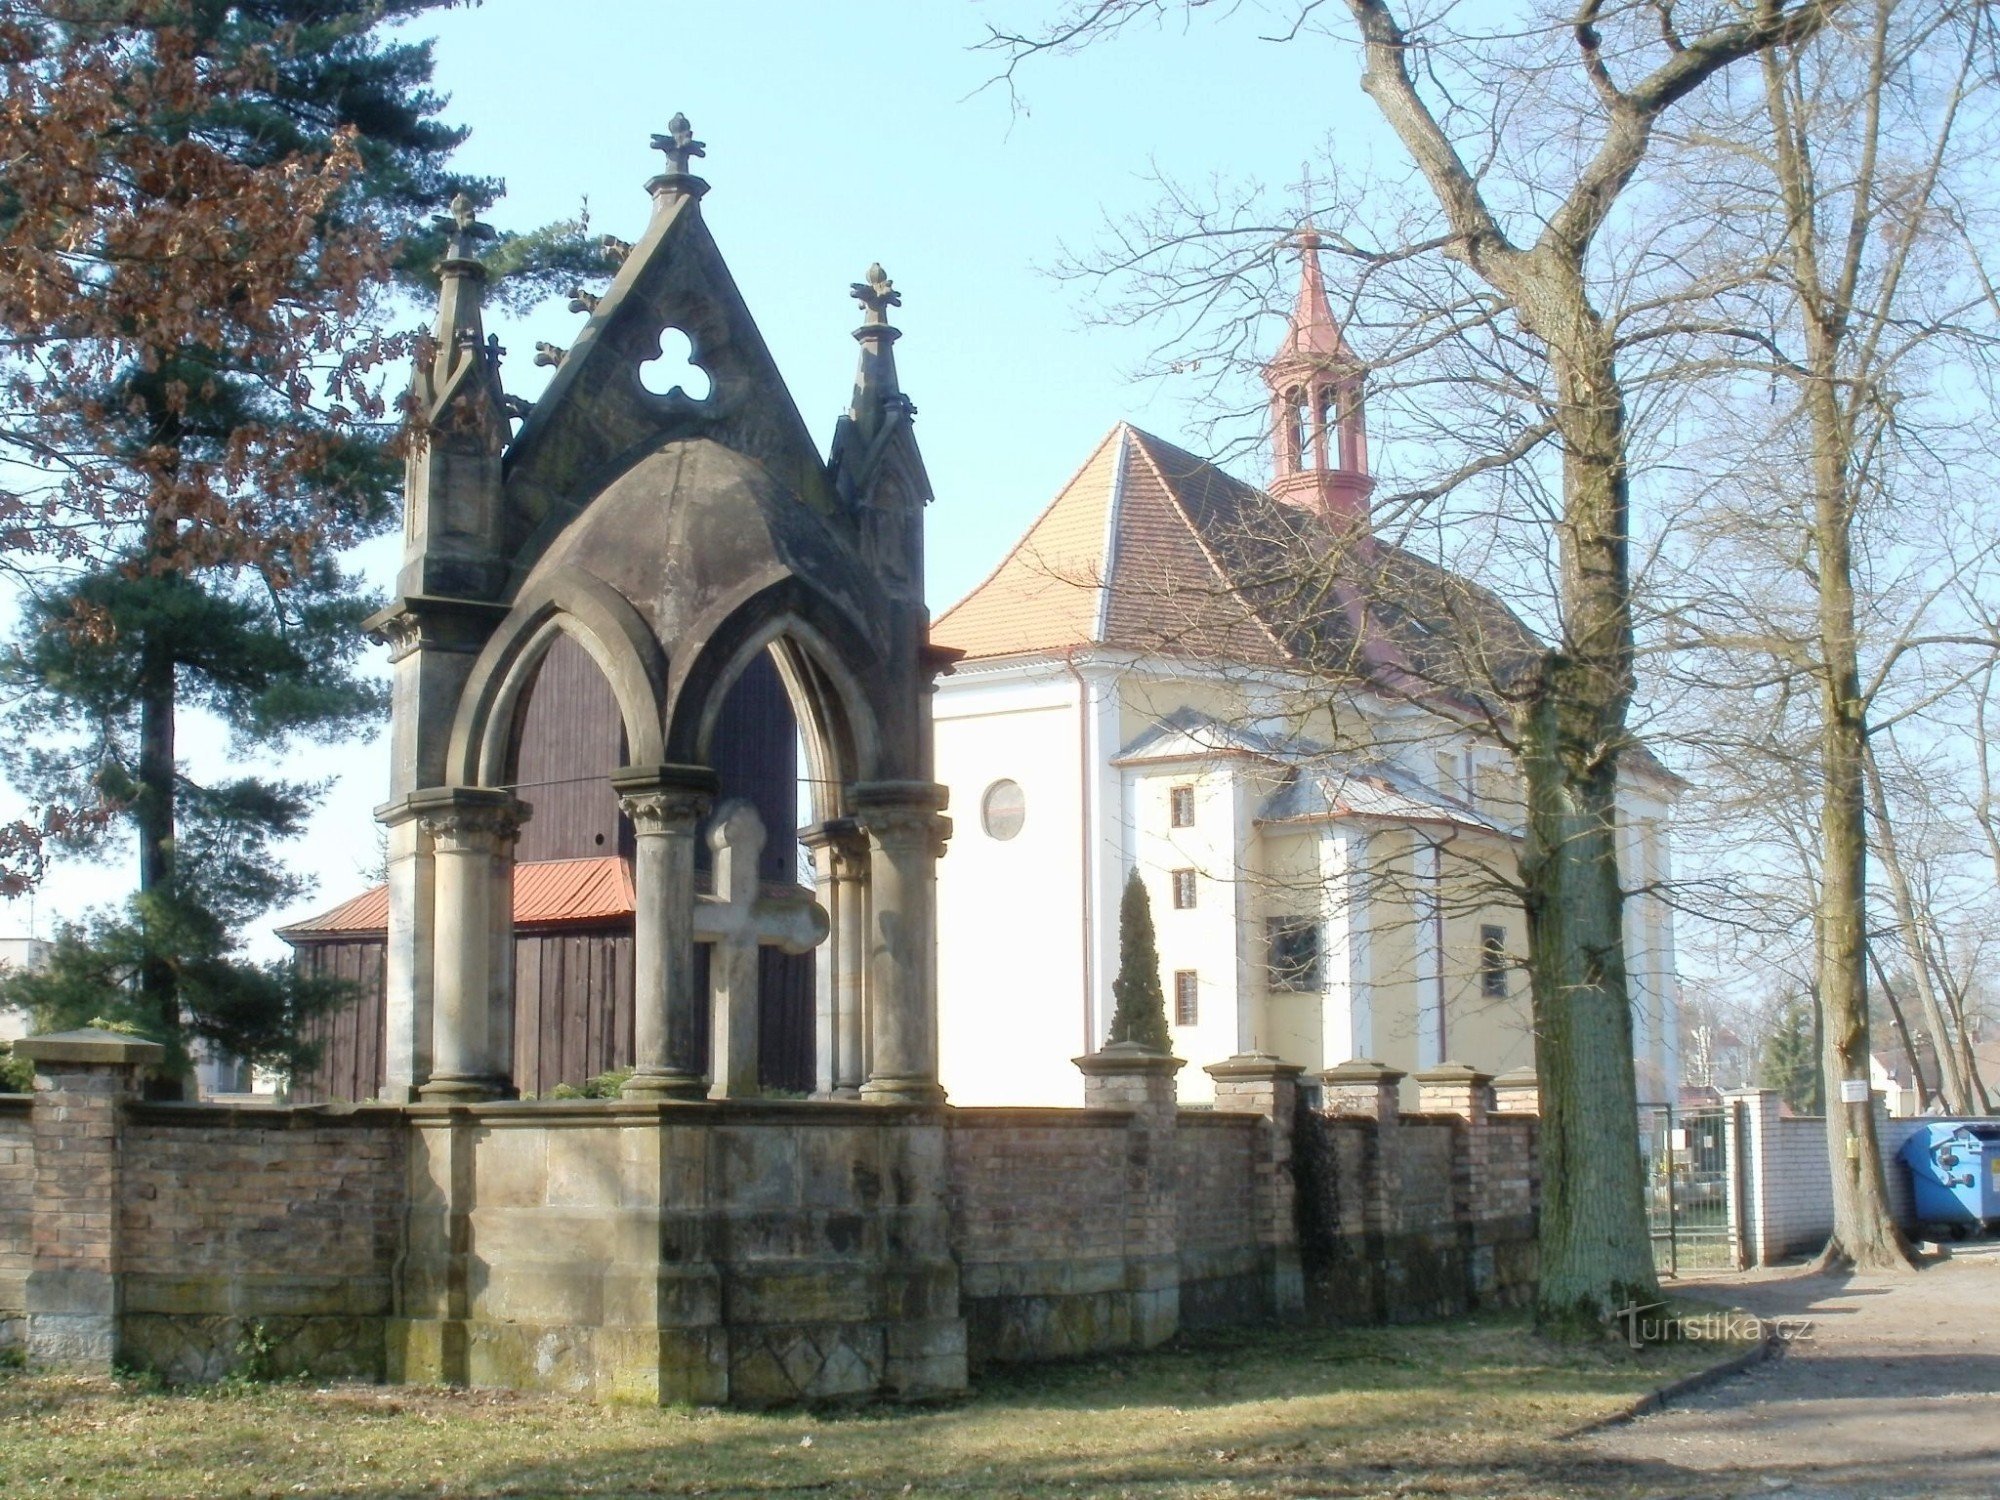 Borohrádek - iglesia de St. Miguel el Arcángel